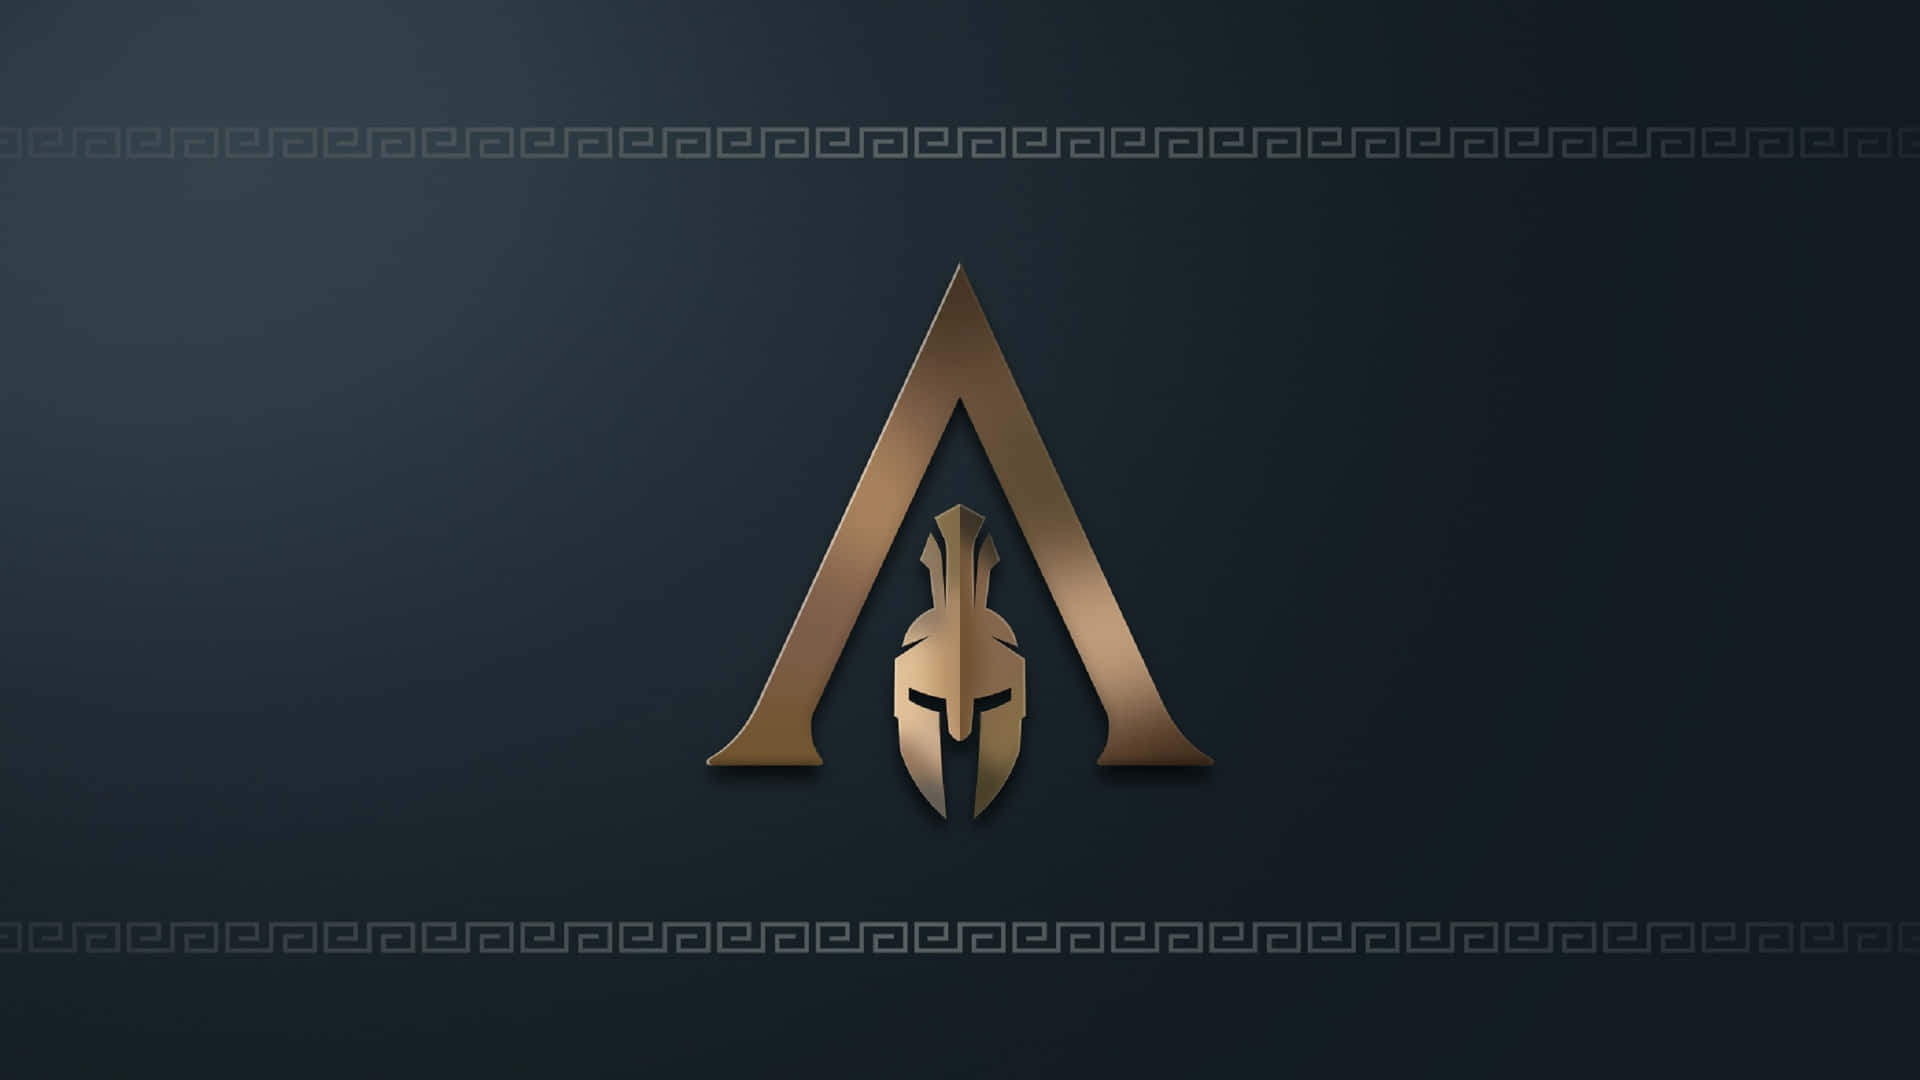 Fondode Pantalla De Assassin's Creed Odyssey Con El Logotipo En 1920x1080.